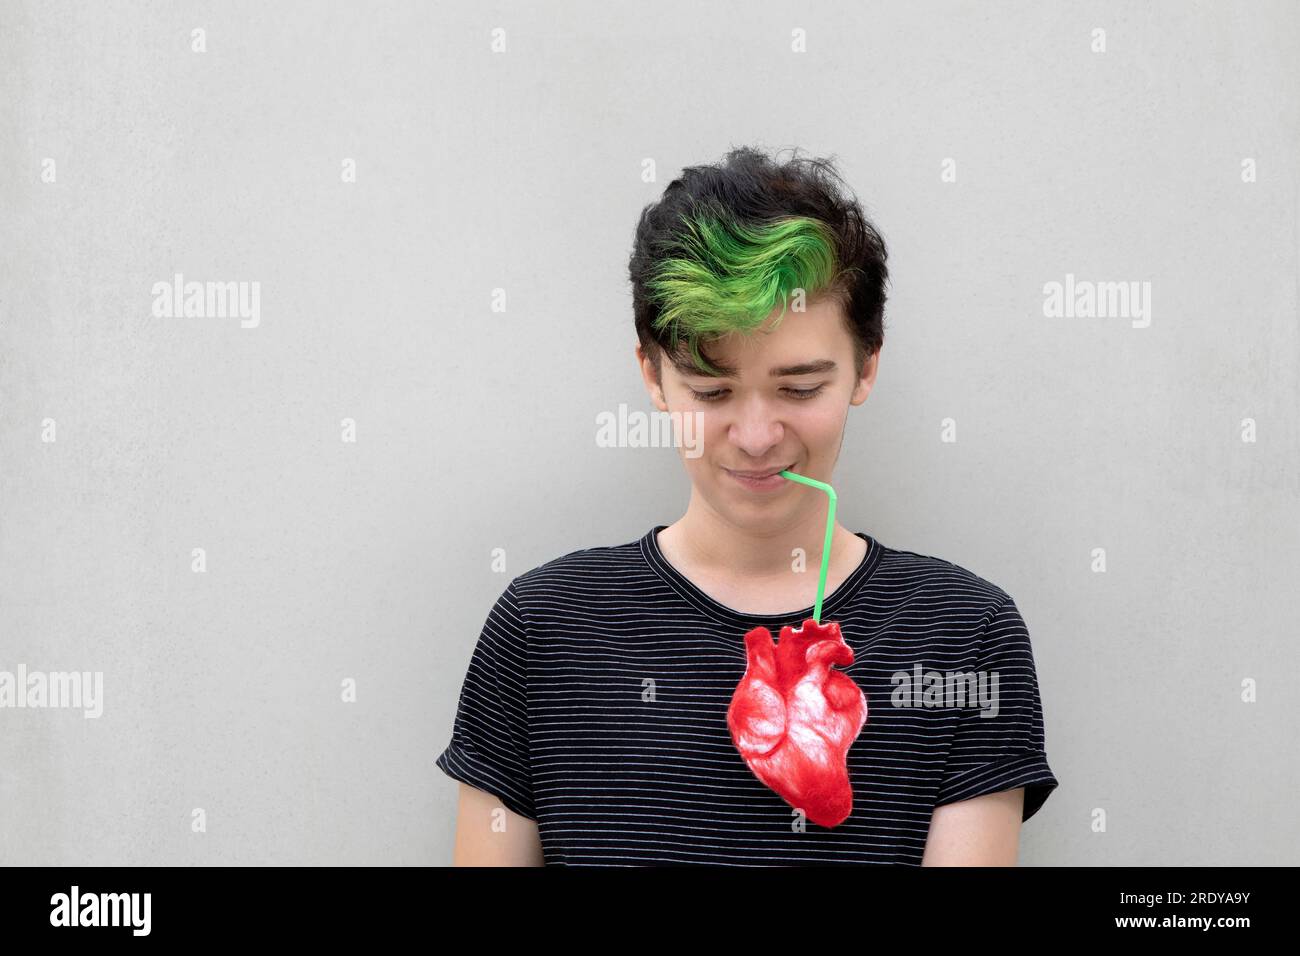 Adolescent garçon avec les cheveux verts teints buvant du coeur sur fond gris Banque D'Images